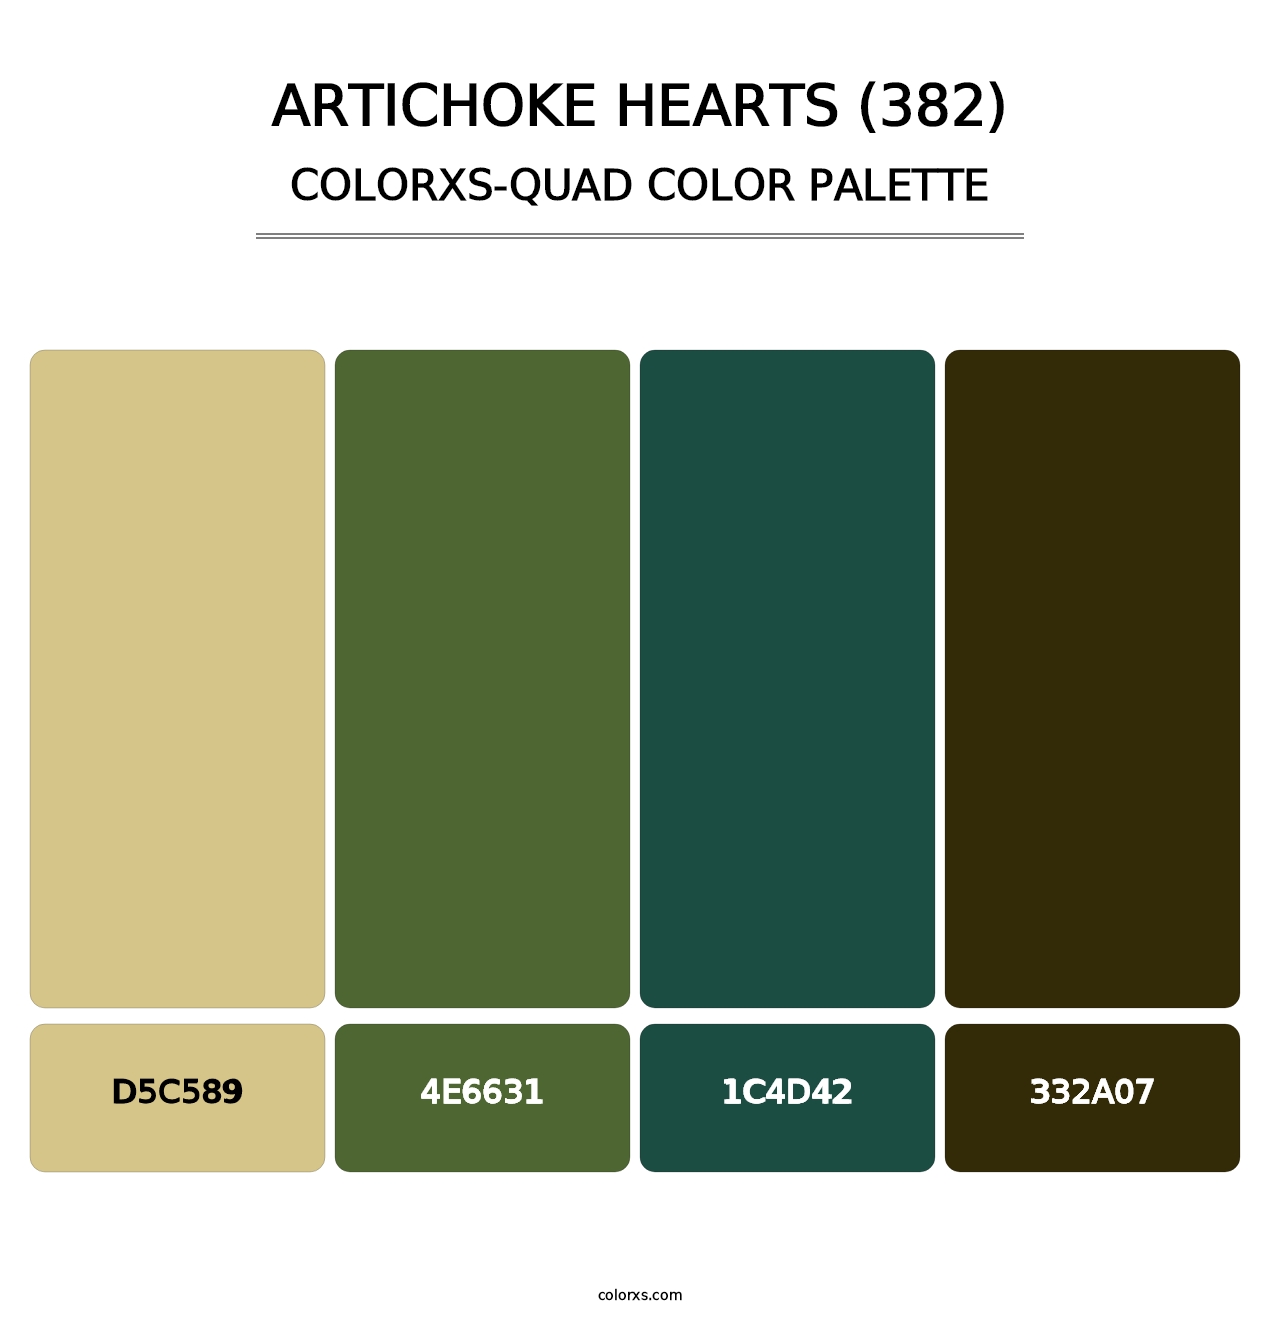 Artichoke Hearts (382) - Colorxs Quad Palette